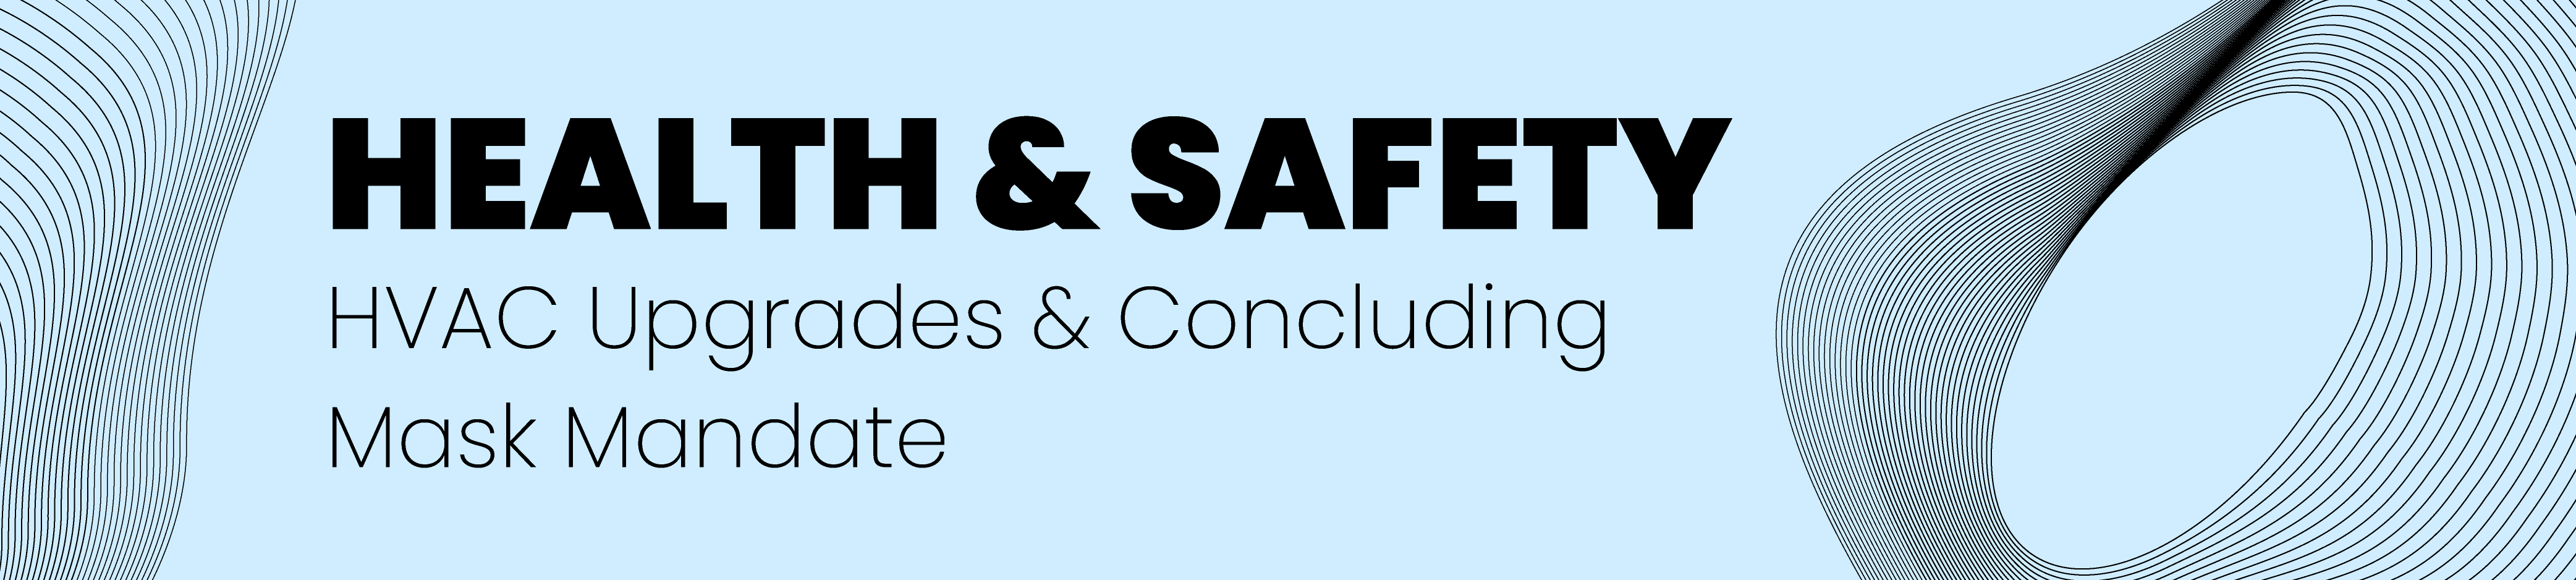 Health & Safety, HVAC Upgrades & Concluding Mask Mandate